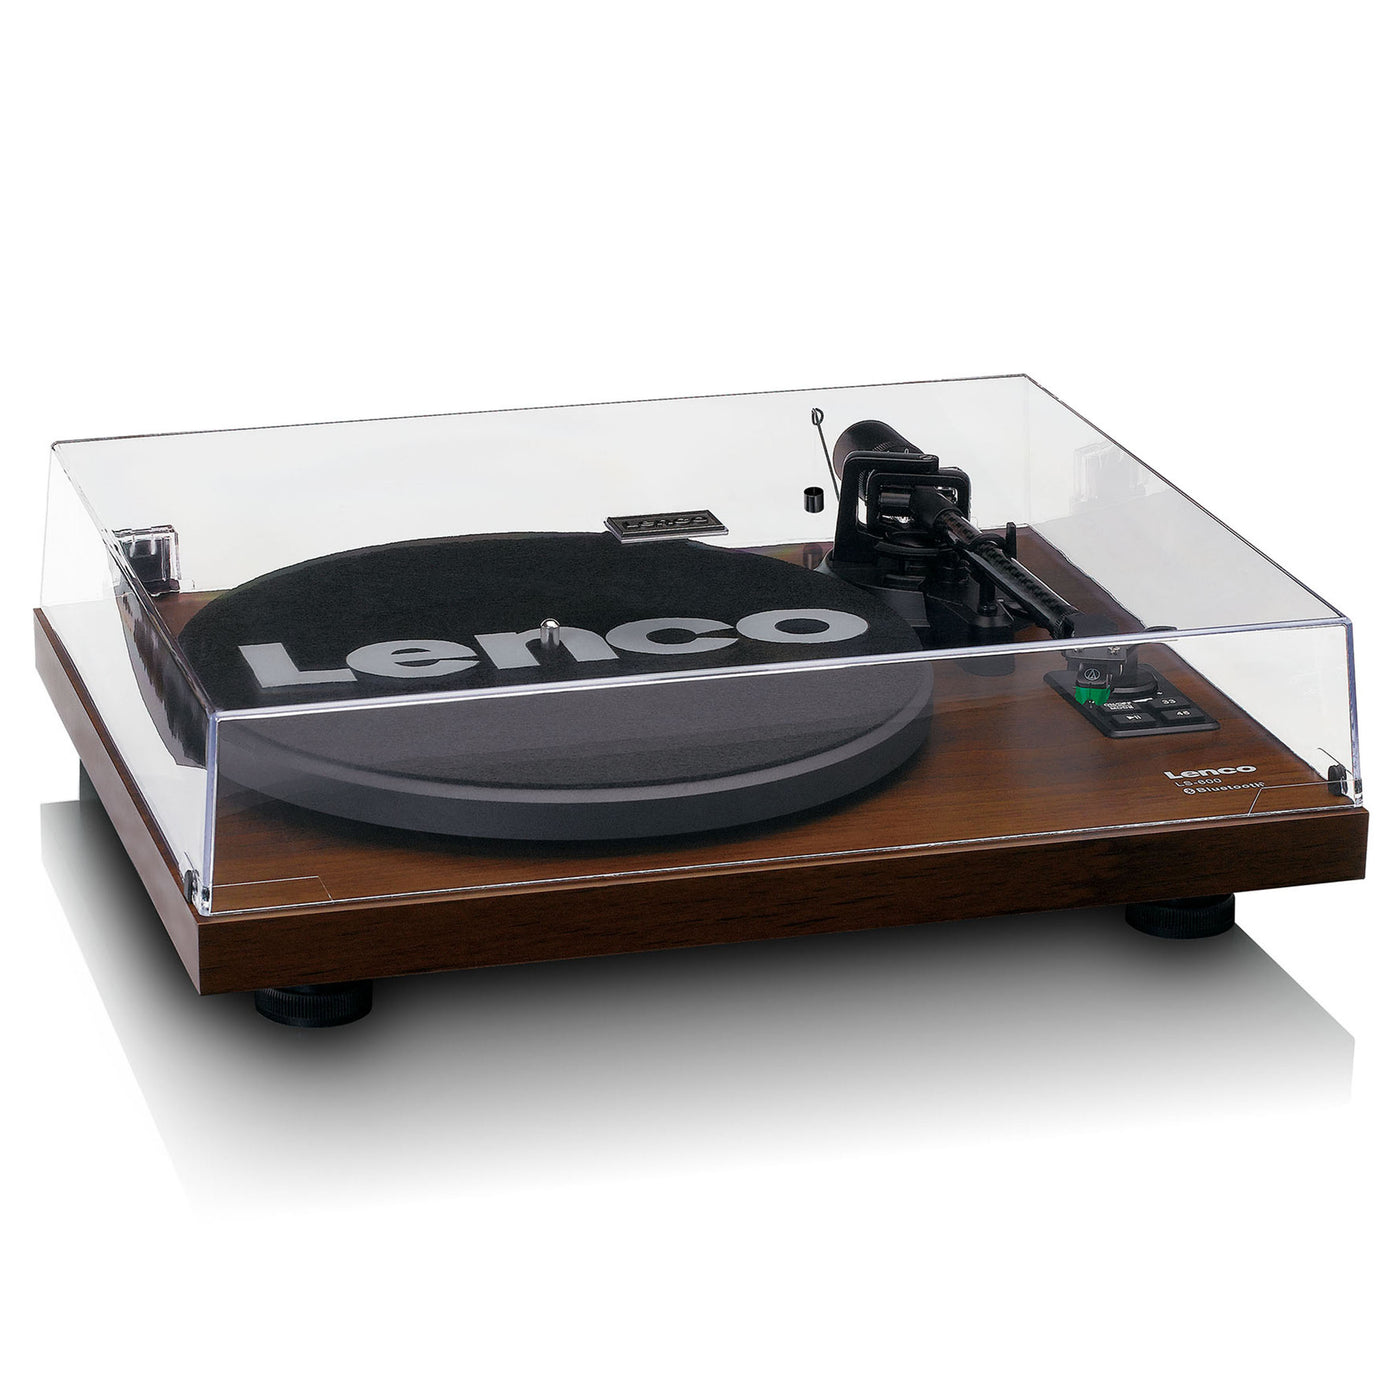 LENCO LS-600WA - Gramofon z wbudowanym wzmacniaczem i Bluetooth® oraz 2 głośnikami zewnętrznymi